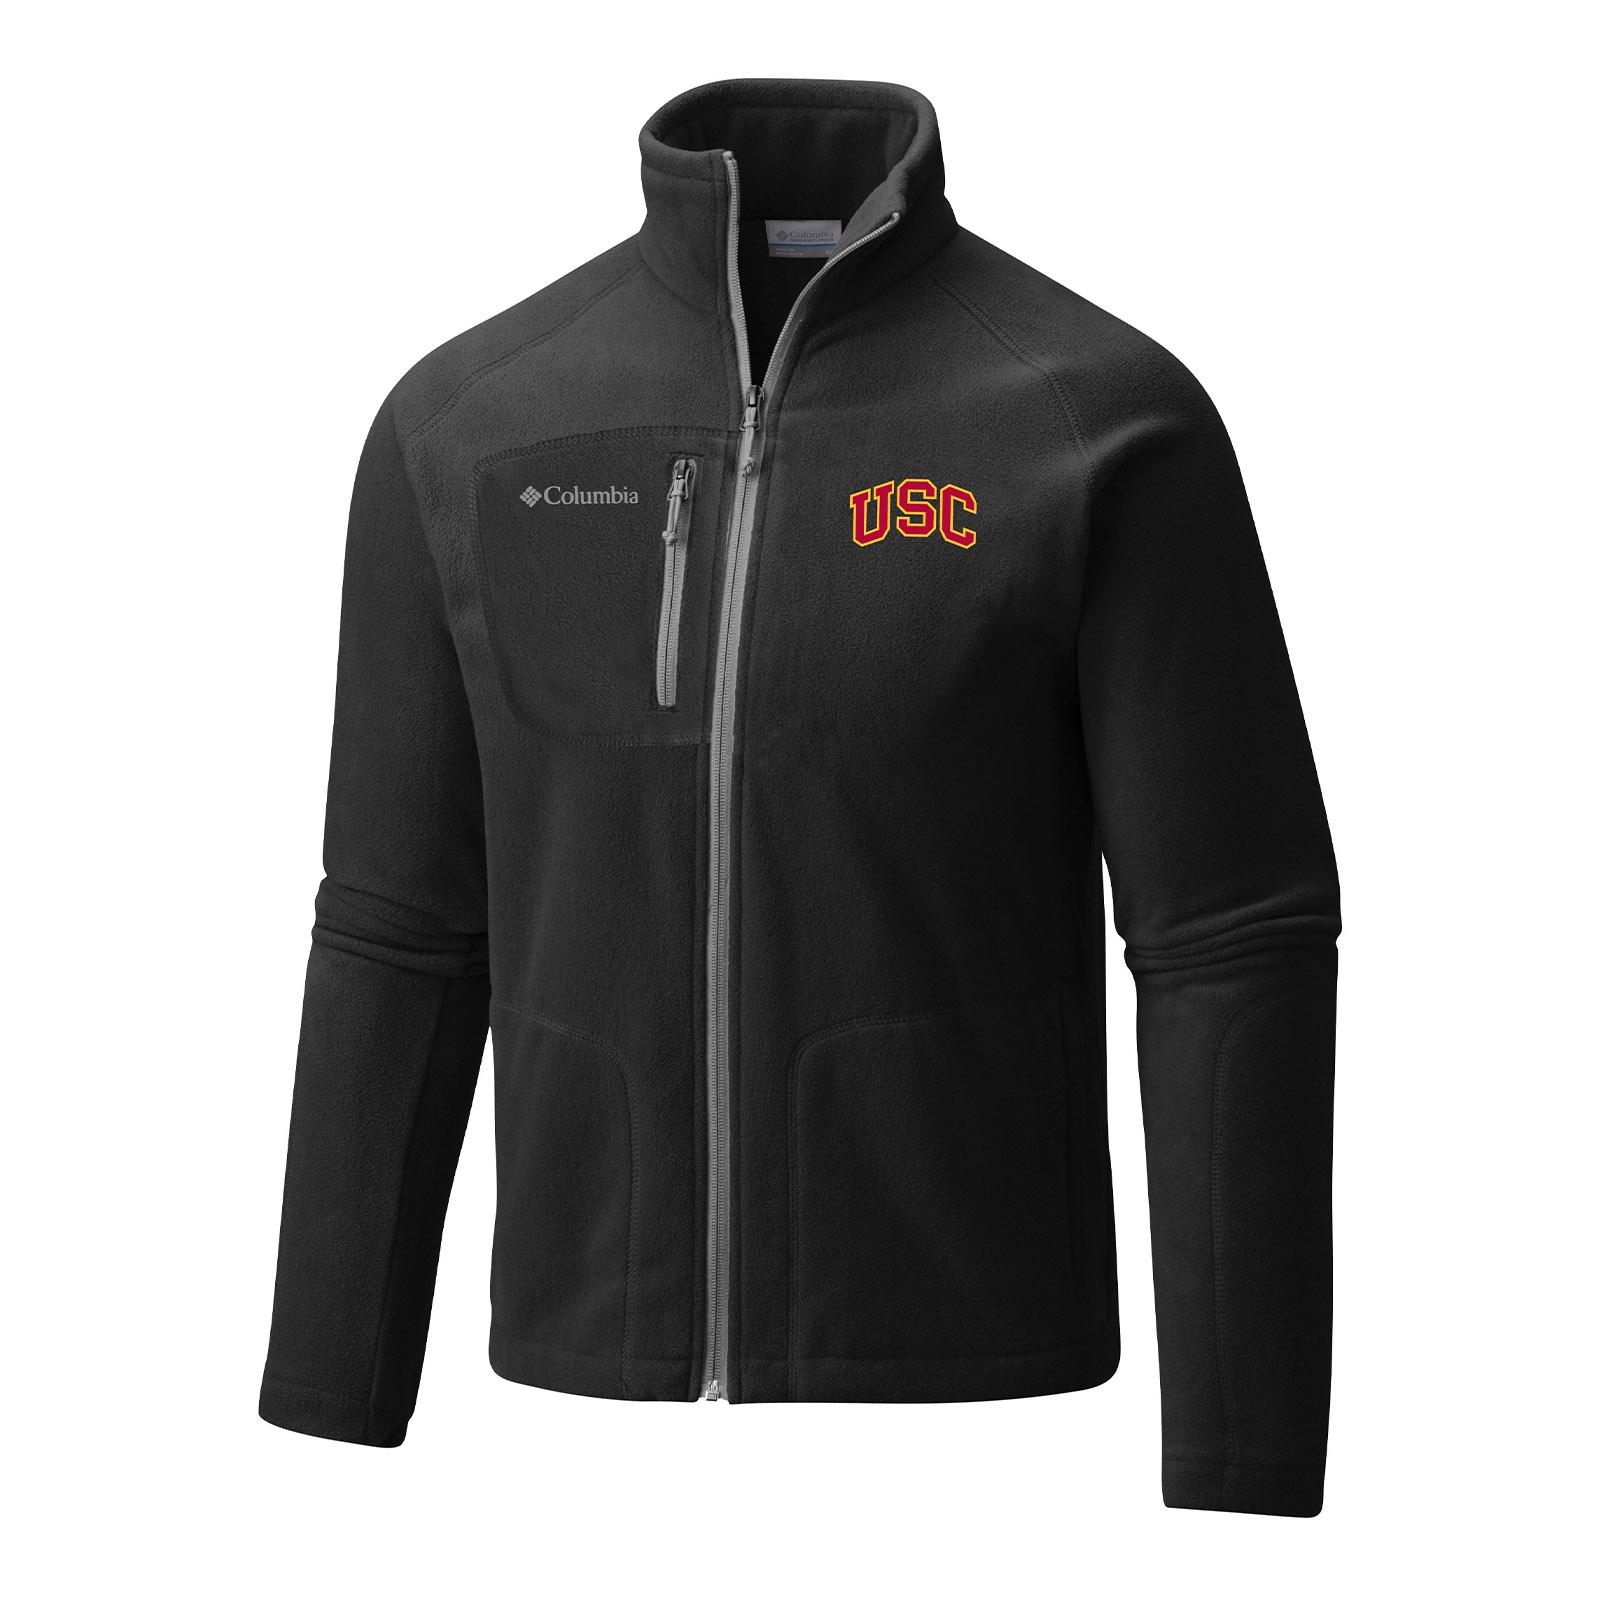 USC Mens Fast Trek II Full Zip Fleece Jacket image01